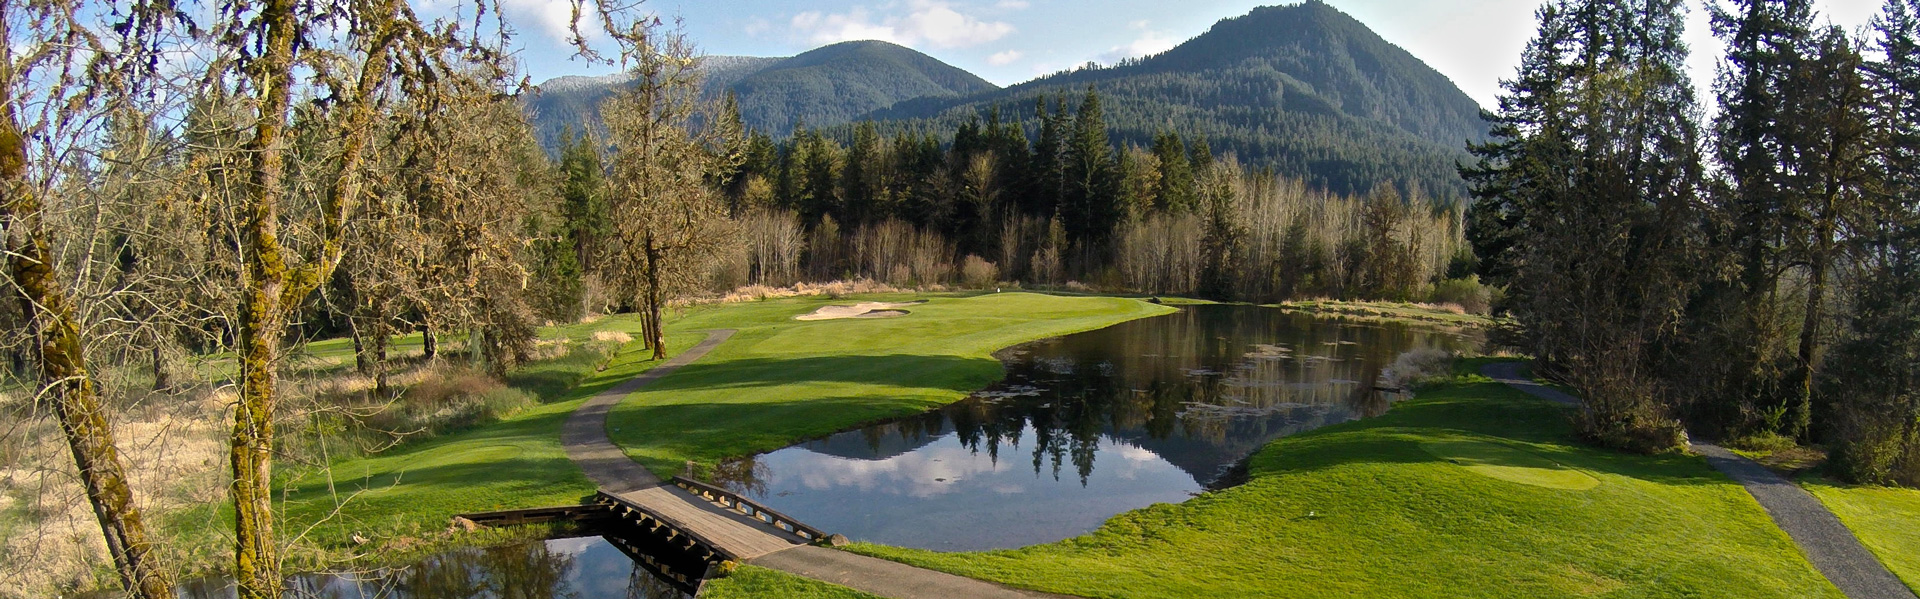 Home - Oregon Golf Club